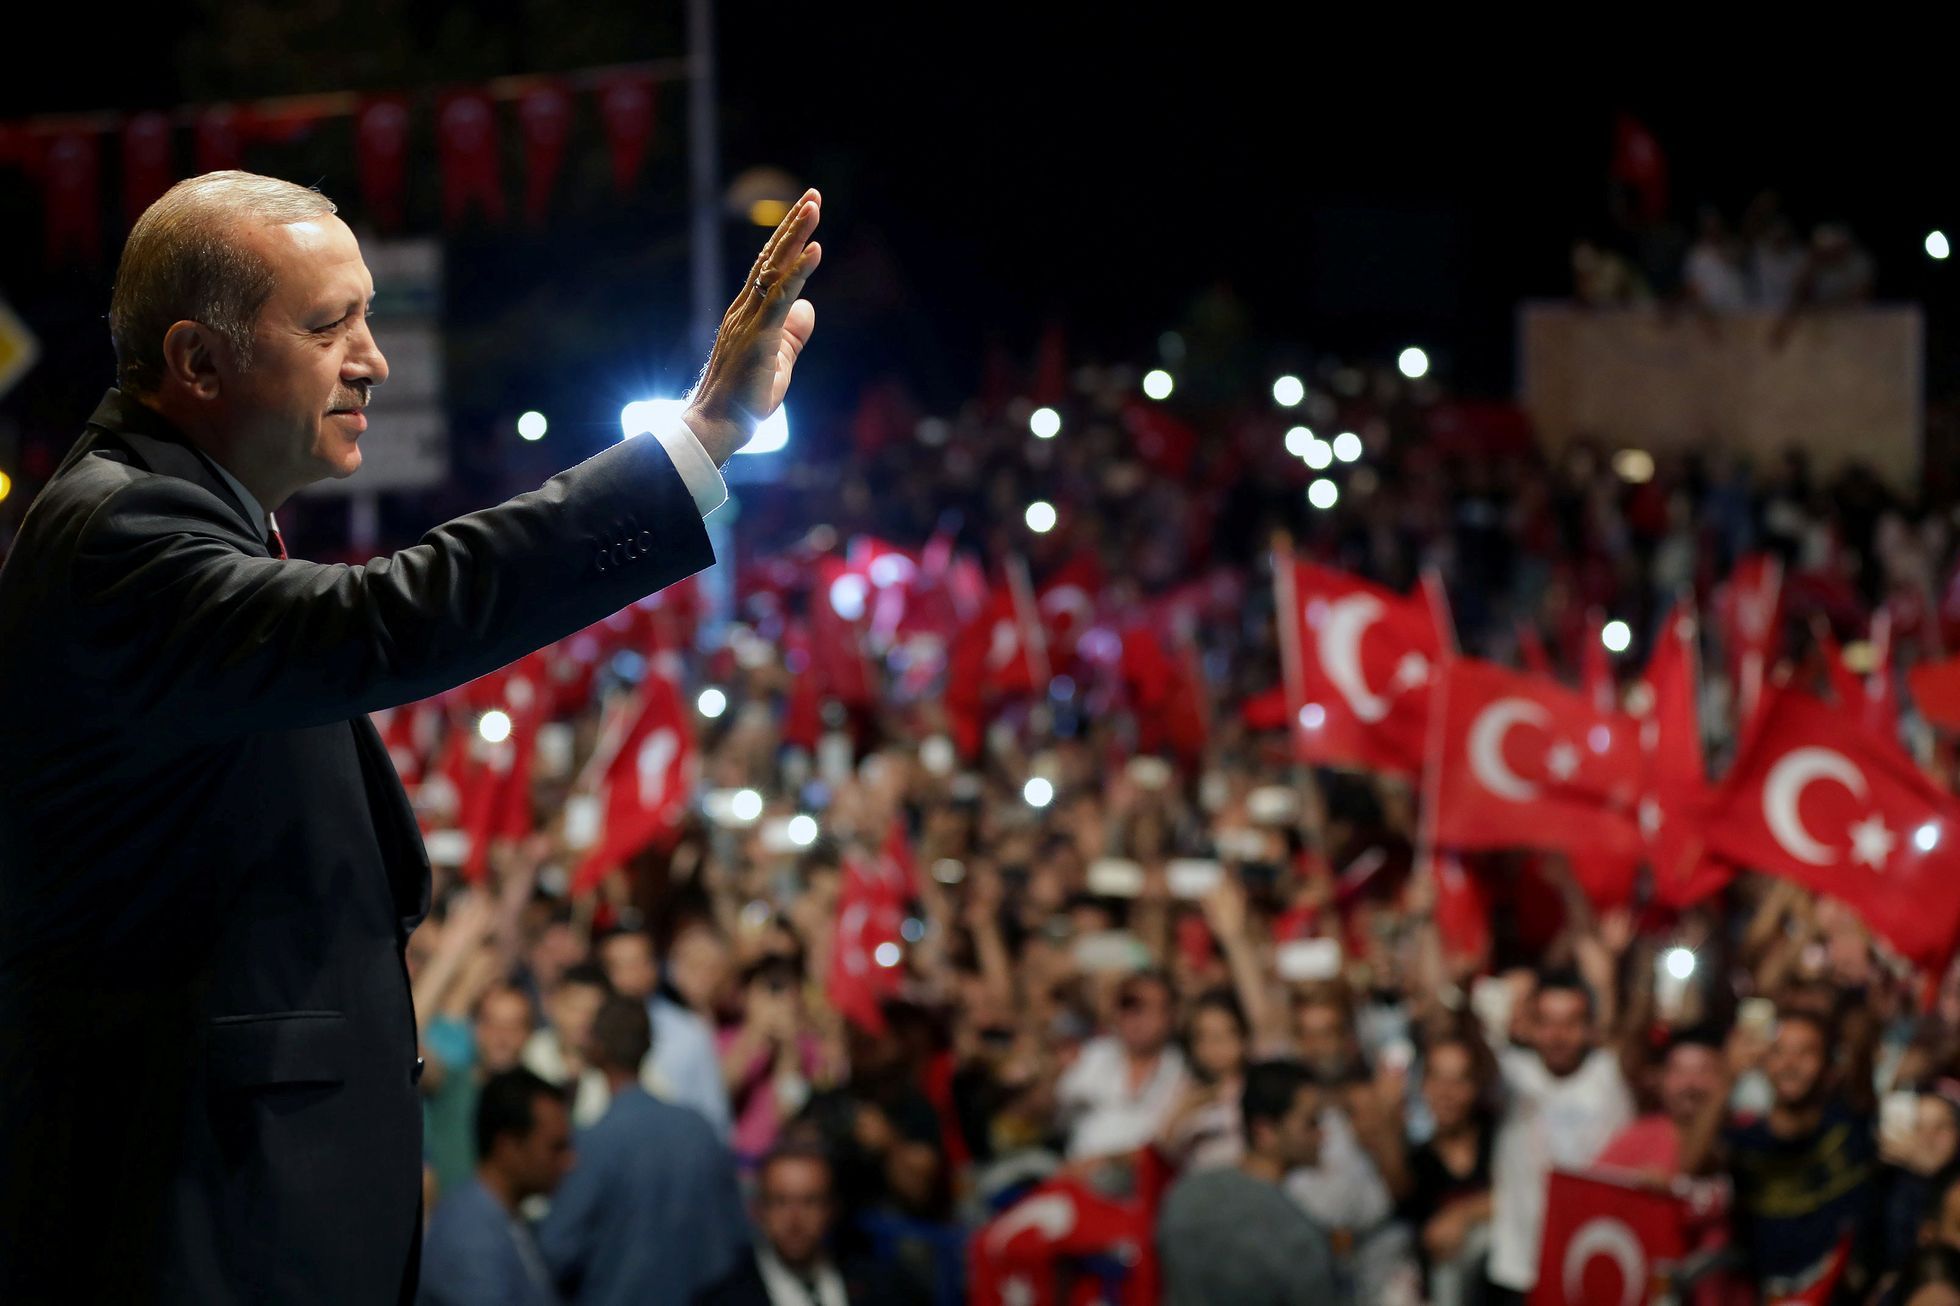 Turecký prezident Erdogan vítá své příznivce před svou rezidencí v Istanbulu